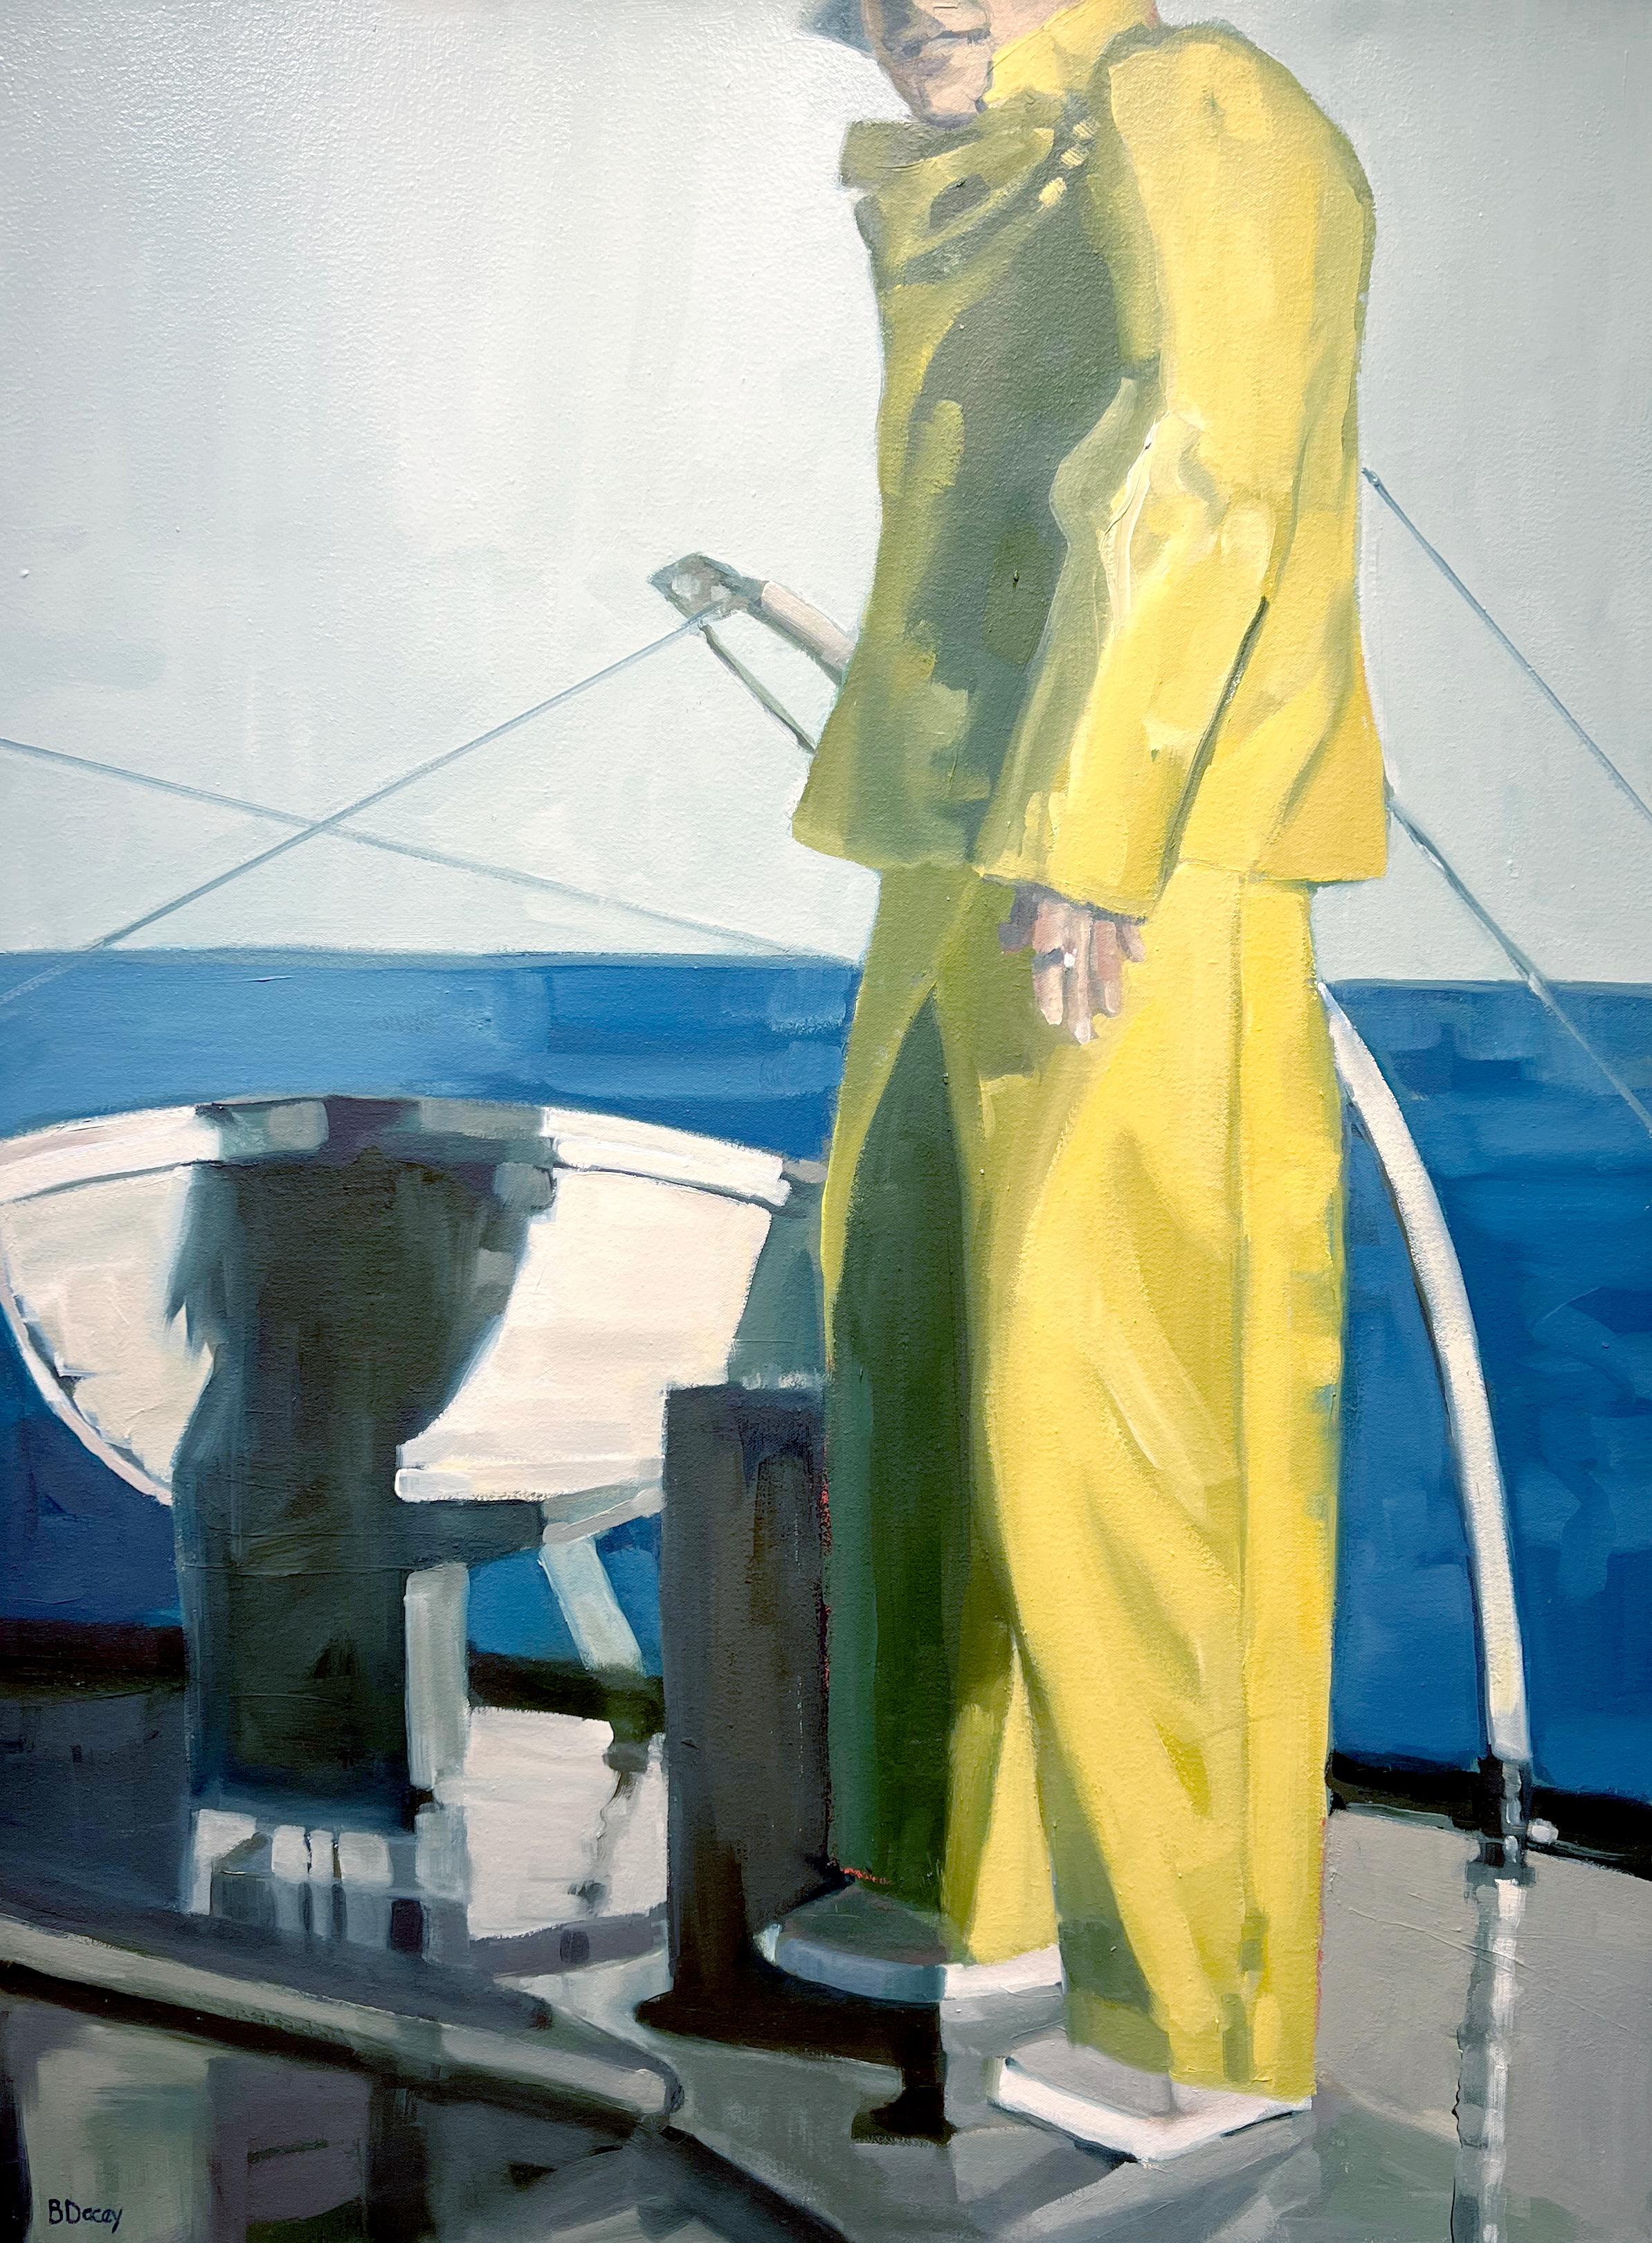 Dieses Werk, "Sailor in Yellow Gear", ist ein 40x30 Ölgemälde auf Leinwand der Künstlerin Beth Dacey. Zu sehen ist ein Mann in gelber Seemannskleidung, der an der Seite des Bootes steht und dem Betrachter den Rücken zuwendet, sein großer Schatten